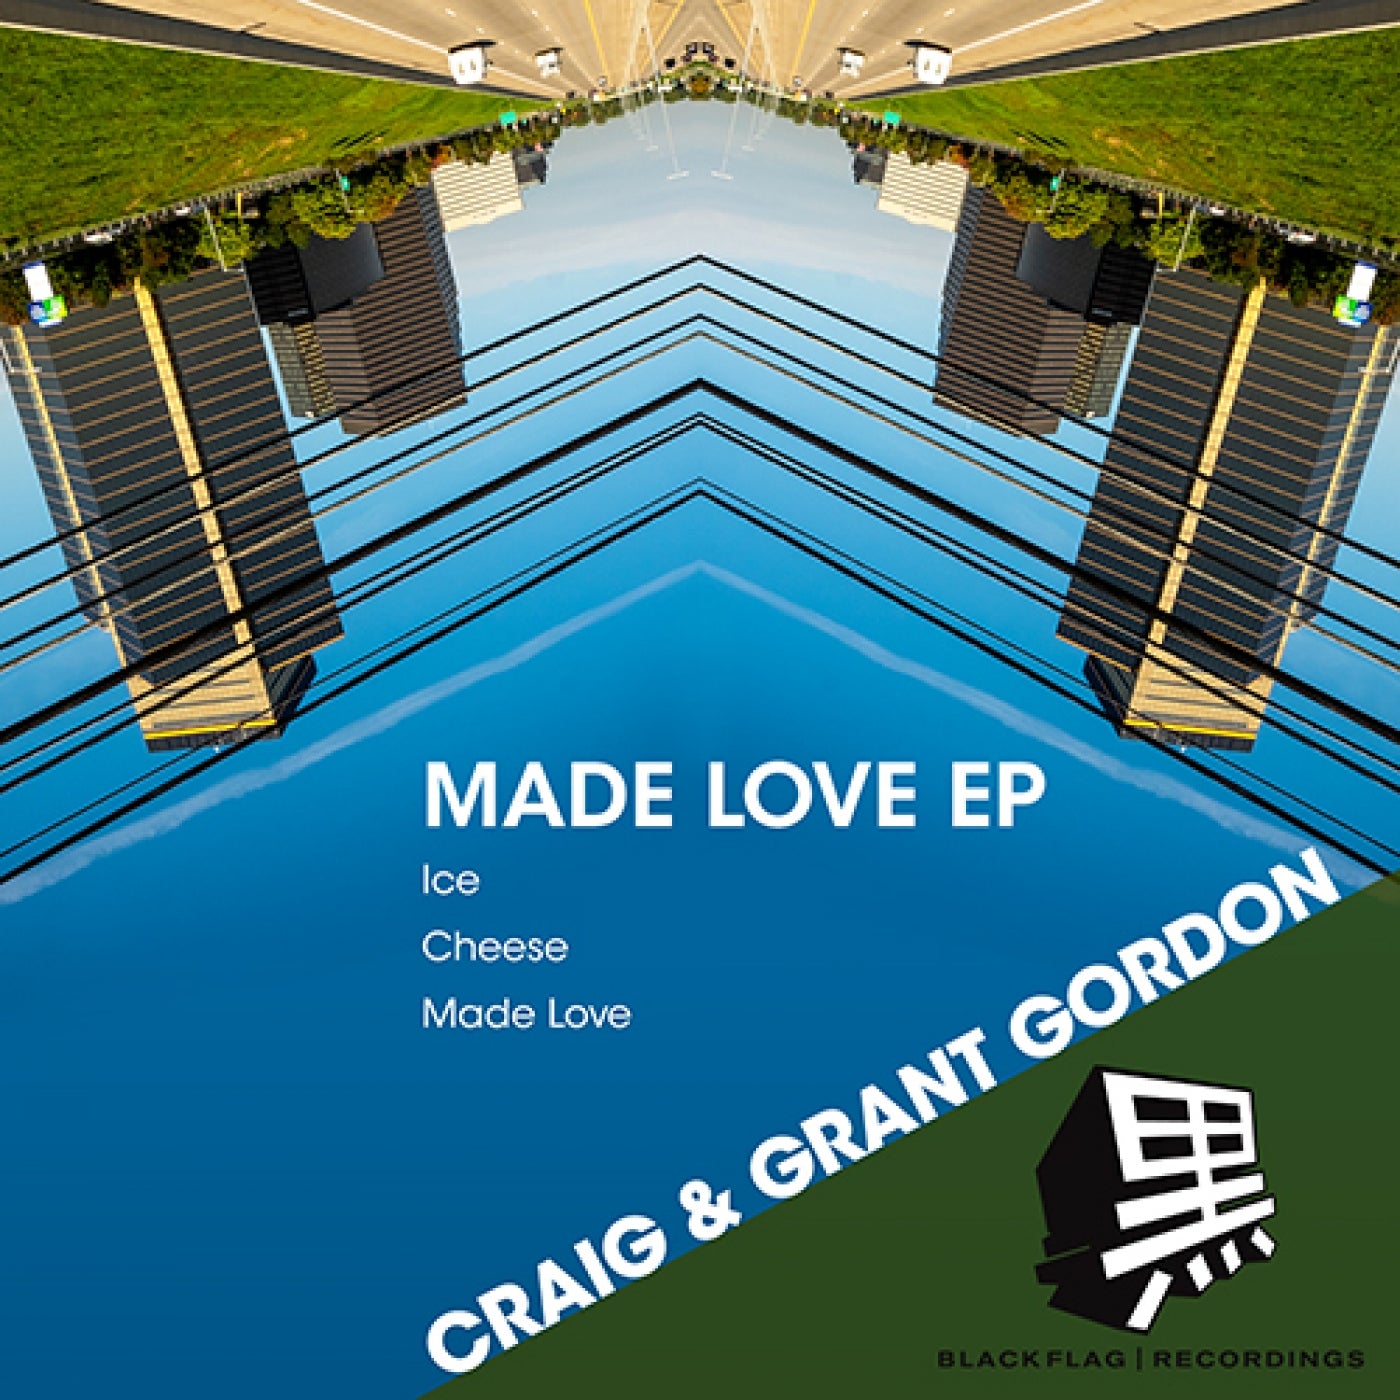 Made Love EP